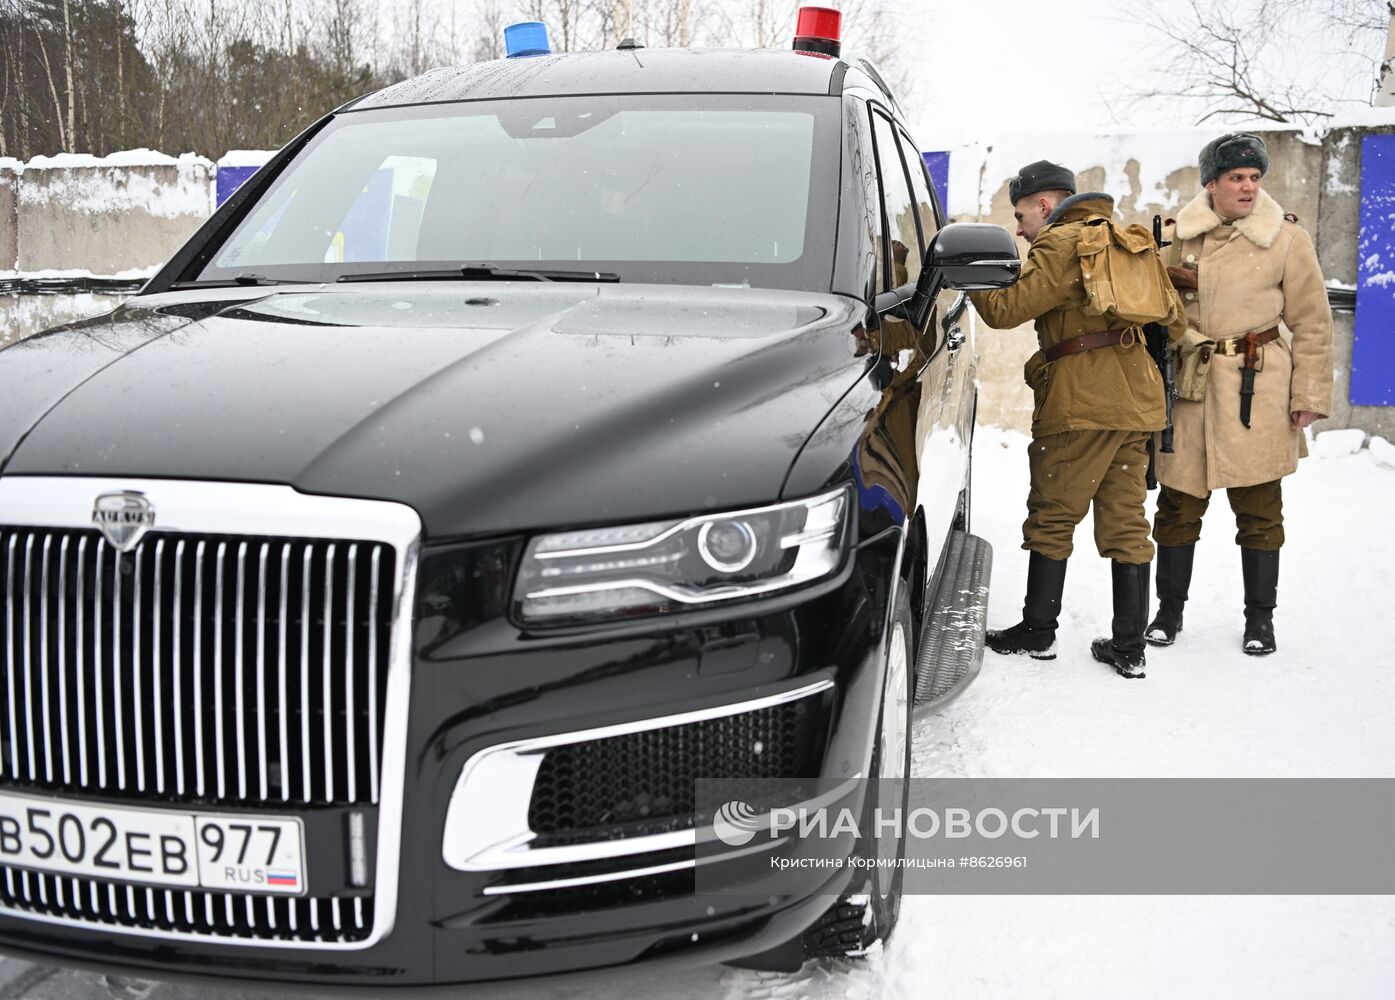 Соревнования на первенство ГОН ФСО России по скоростному маневрированию в зимних условиях